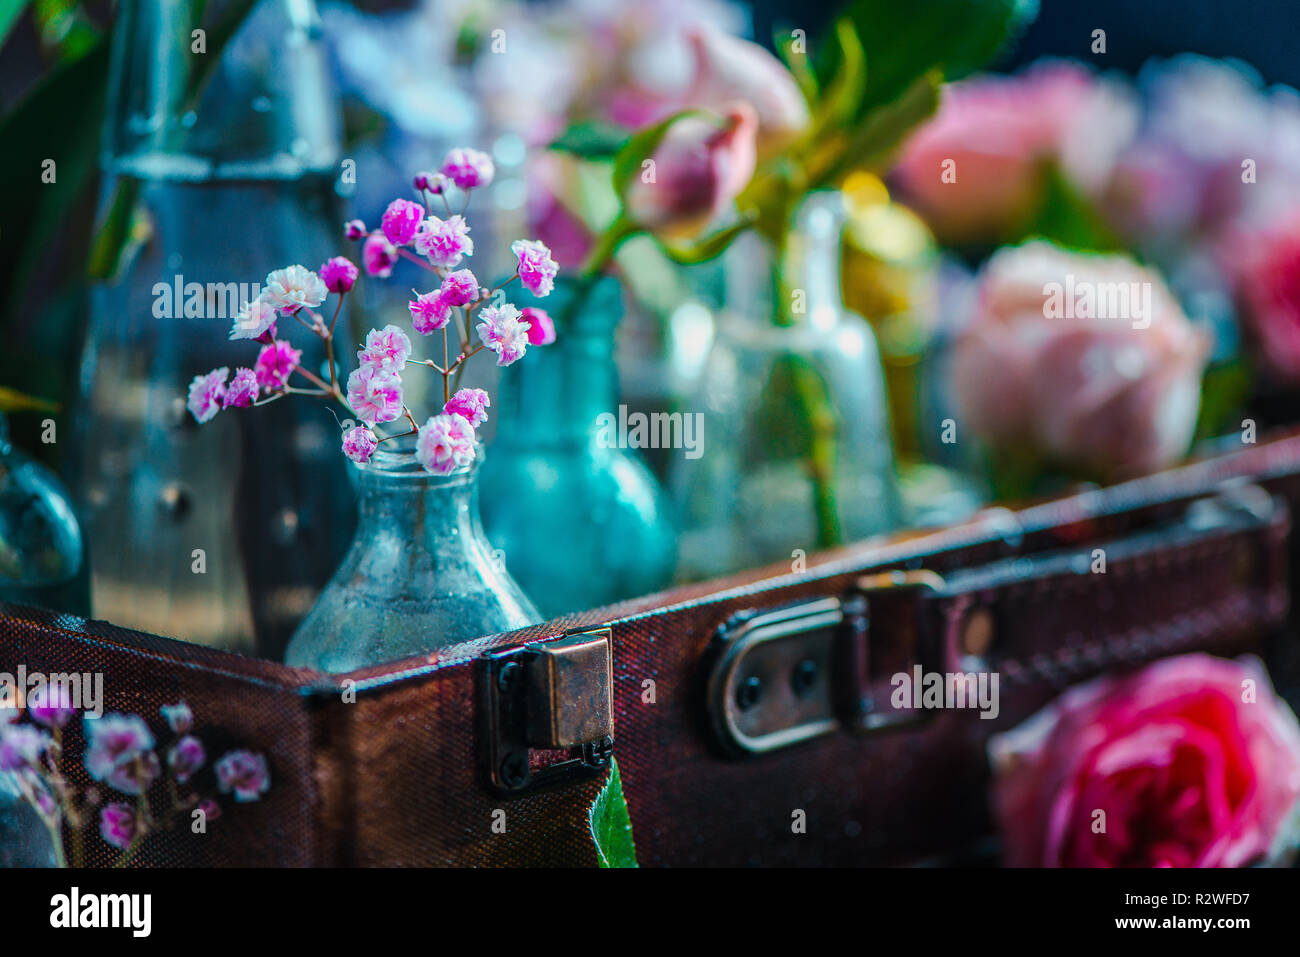 Blume Sammlung in vintage Glasflaschen close-up. Botanik und Parfüm Kopf auf einem dunklen Hintergrund mit kopieren. Farbe, Kontrast und Hintergrundbeleuchtung Stockfoto